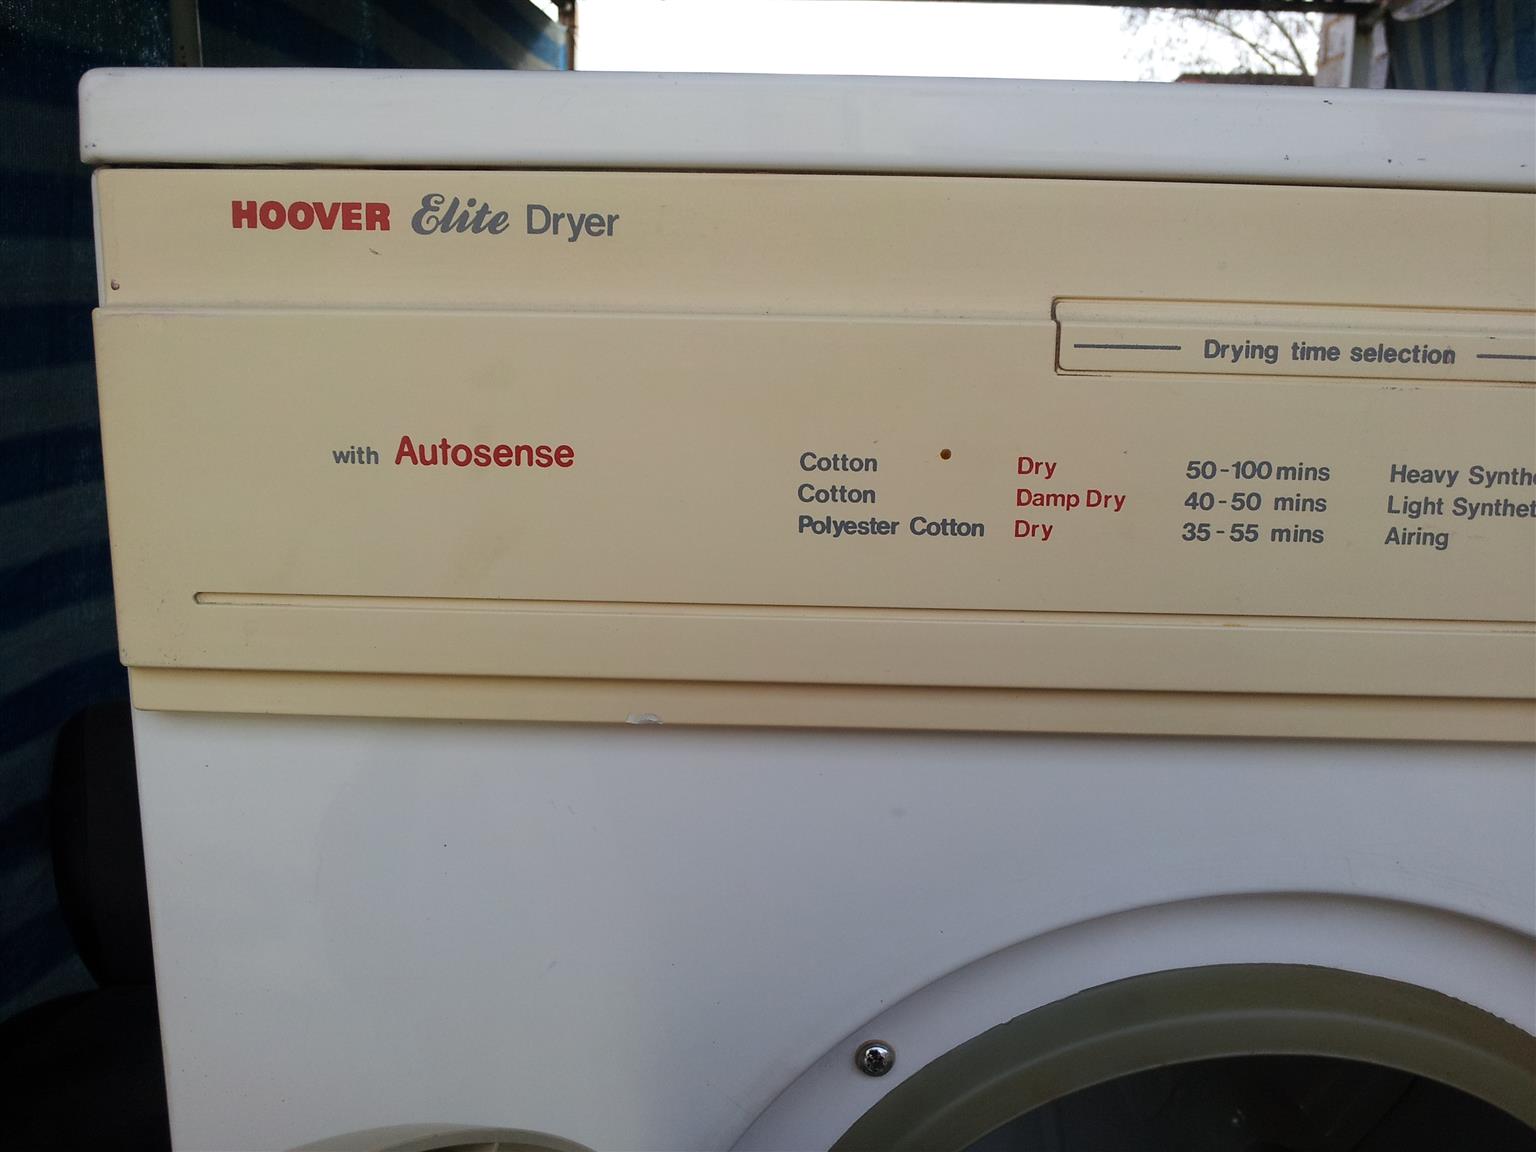 tumble dryer 5kg refurbished hoover elite model d6502